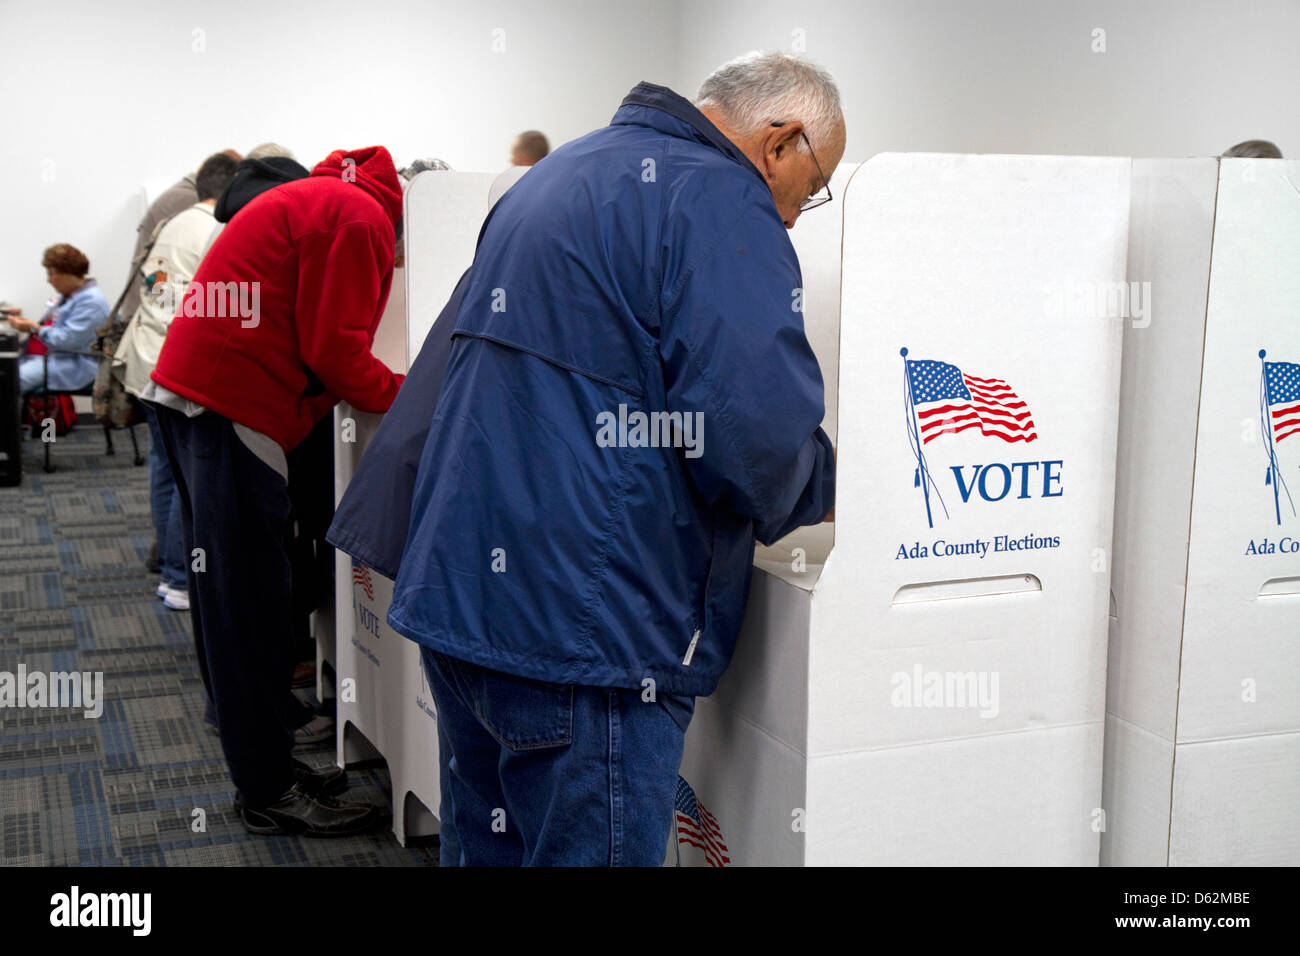 Die Menschen wählen in Karton Wahlkabinen in einem Wahllokal in Boise, Idaho, USA. Stockfoto